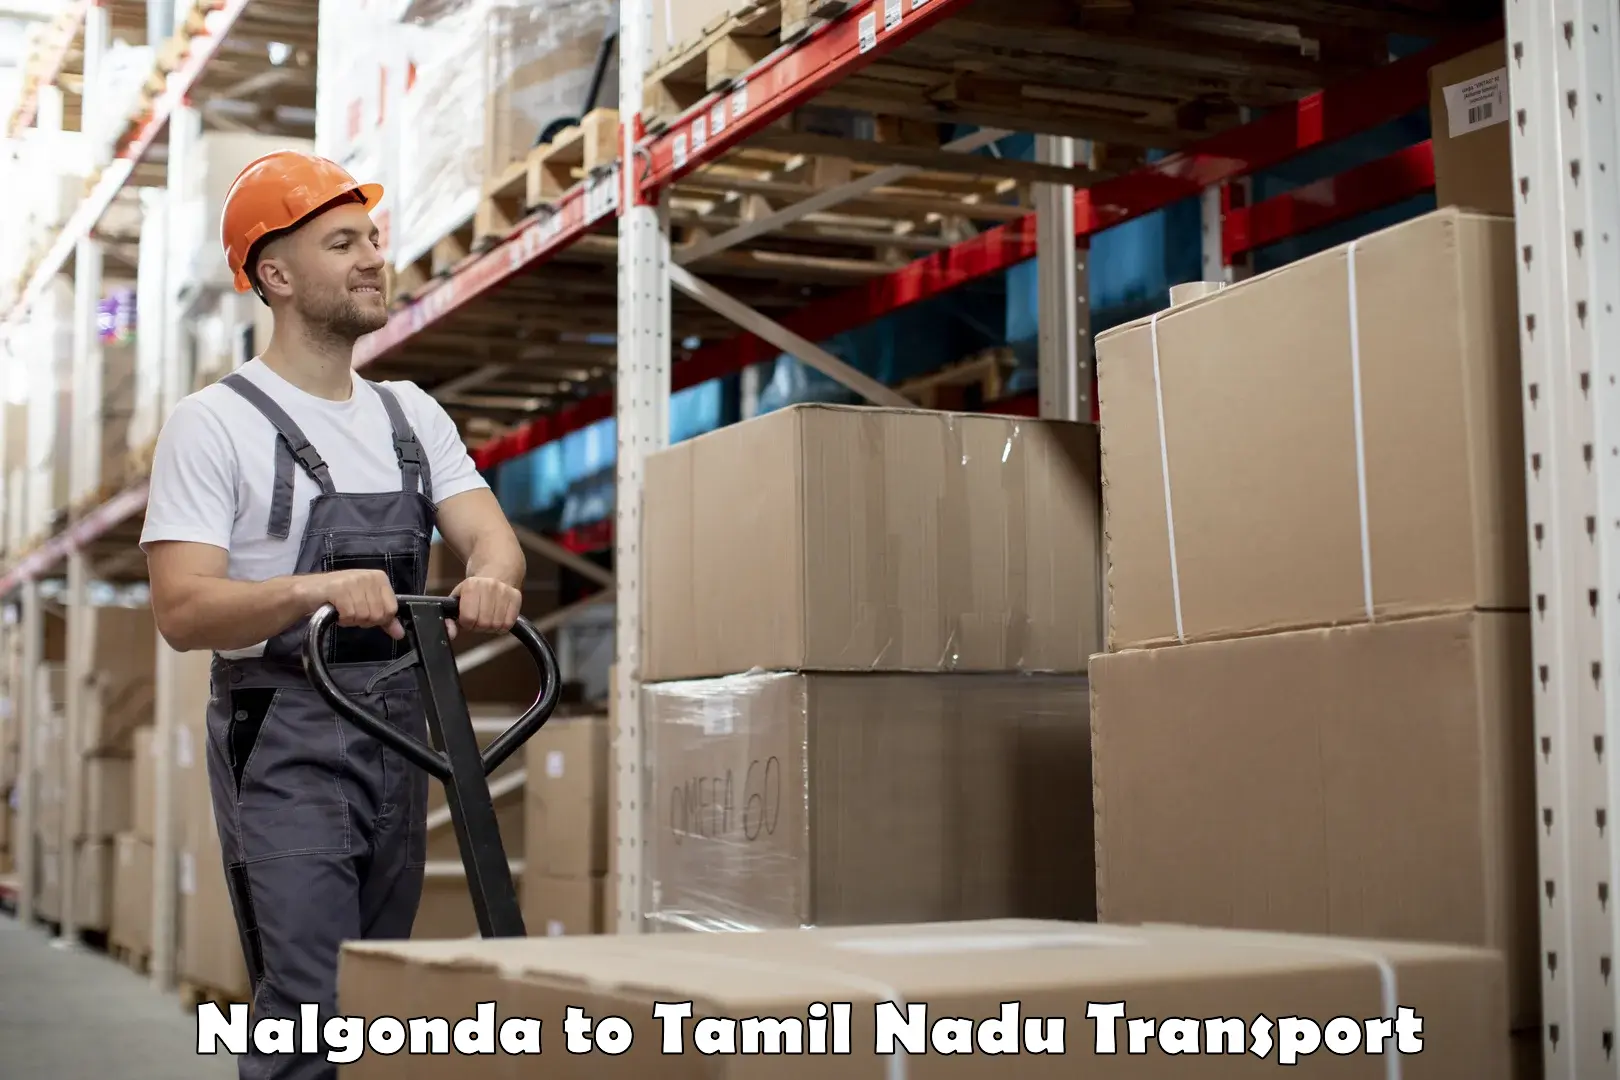 Delivery service Nalgonda to Rasipuram